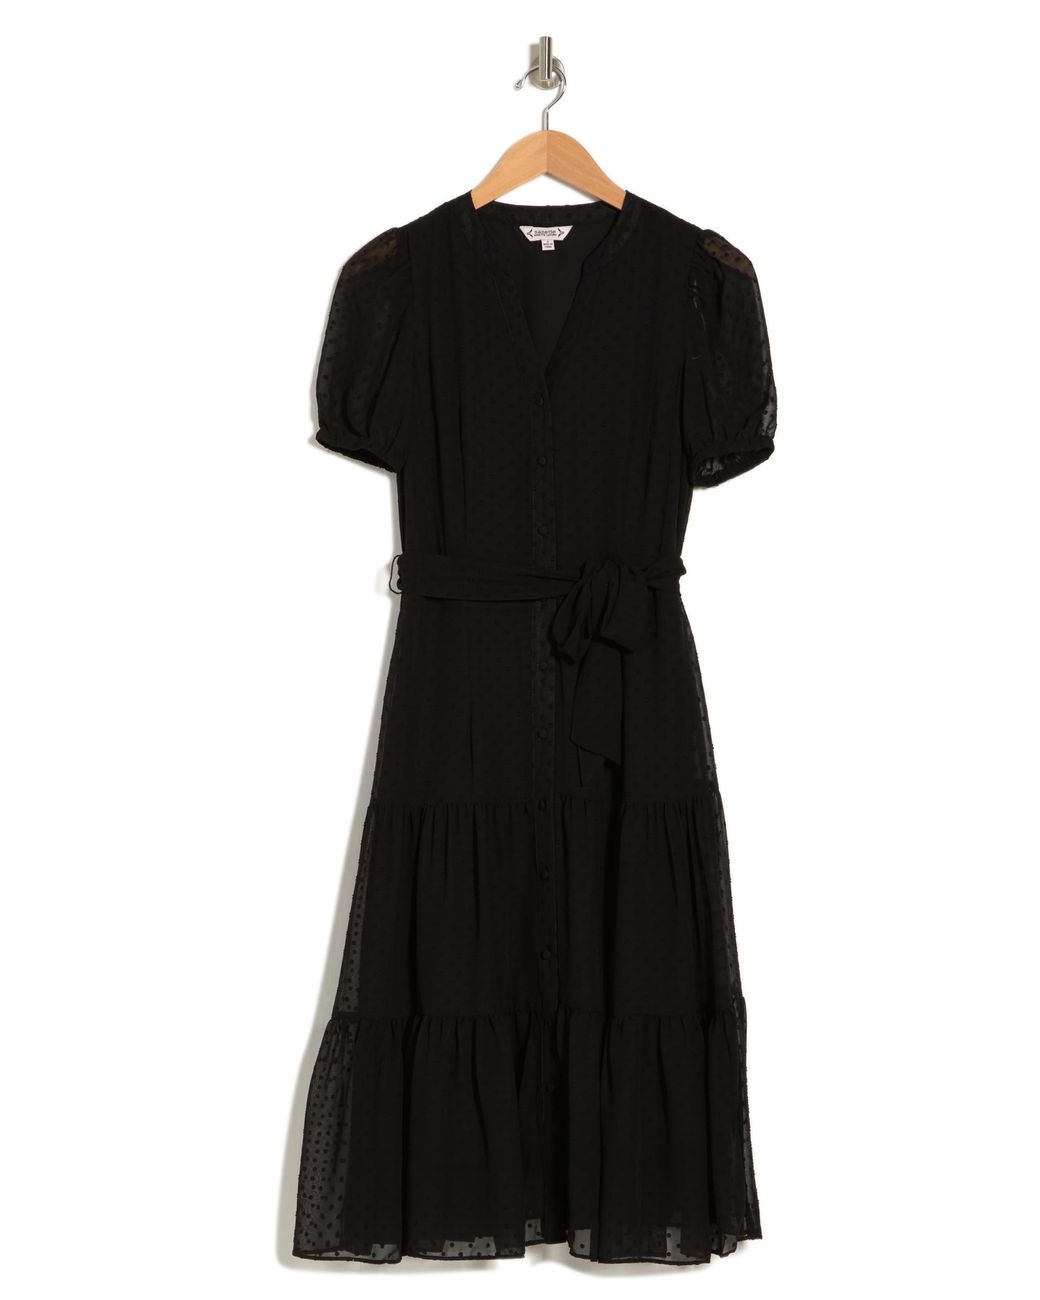 Nanette Lepore Madeline Clip Jacquard Dress in Black | Lyst